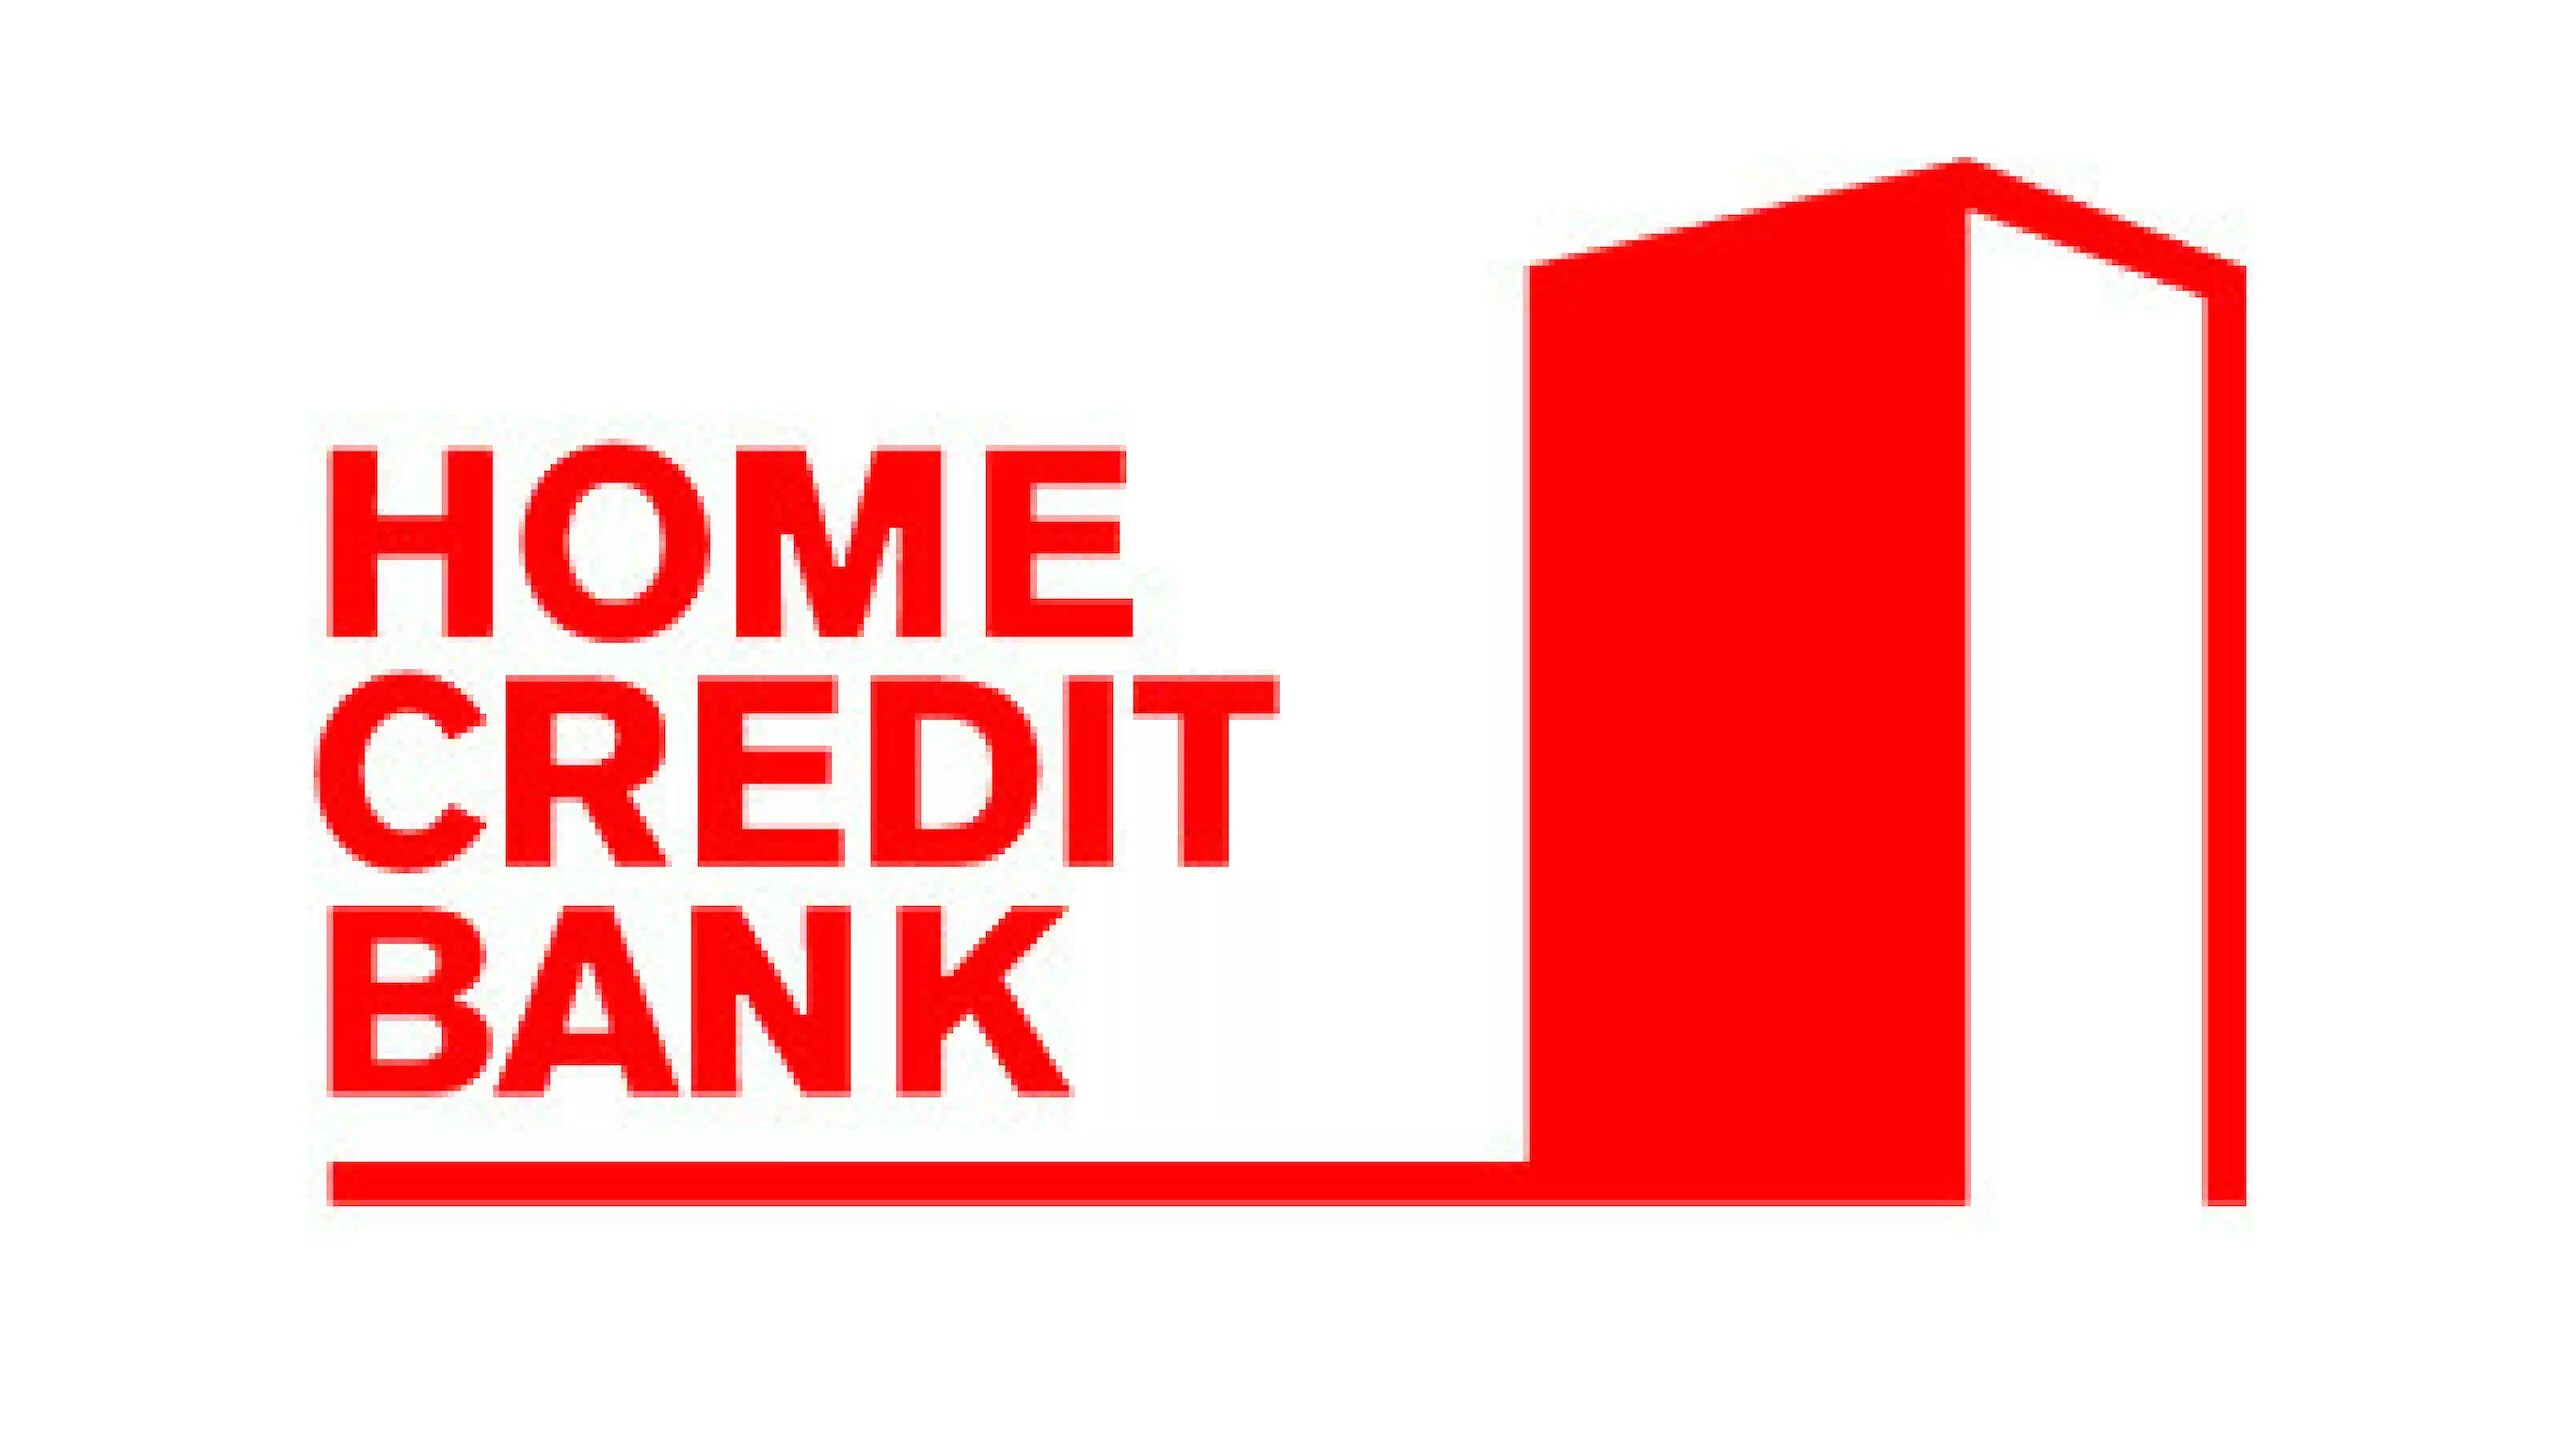 Ном кредит. Банк Home credit. Хоум кредит логотип. Логотип Home credit банка. Home credit Bank логотип без фона.